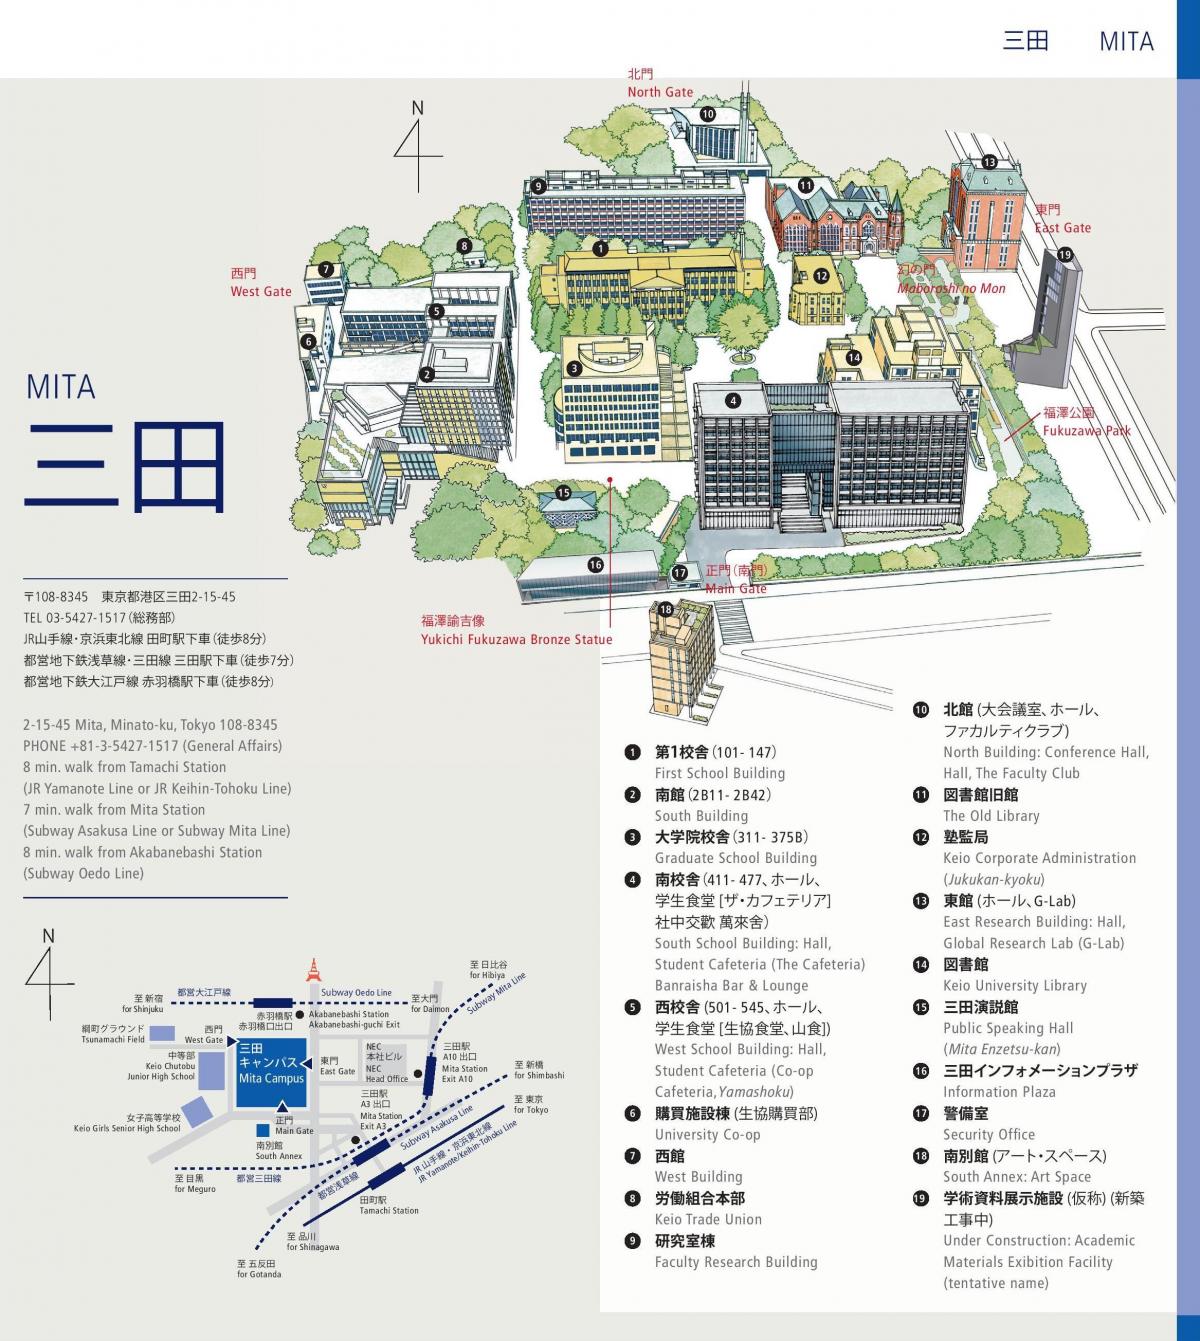 карта университета кейо